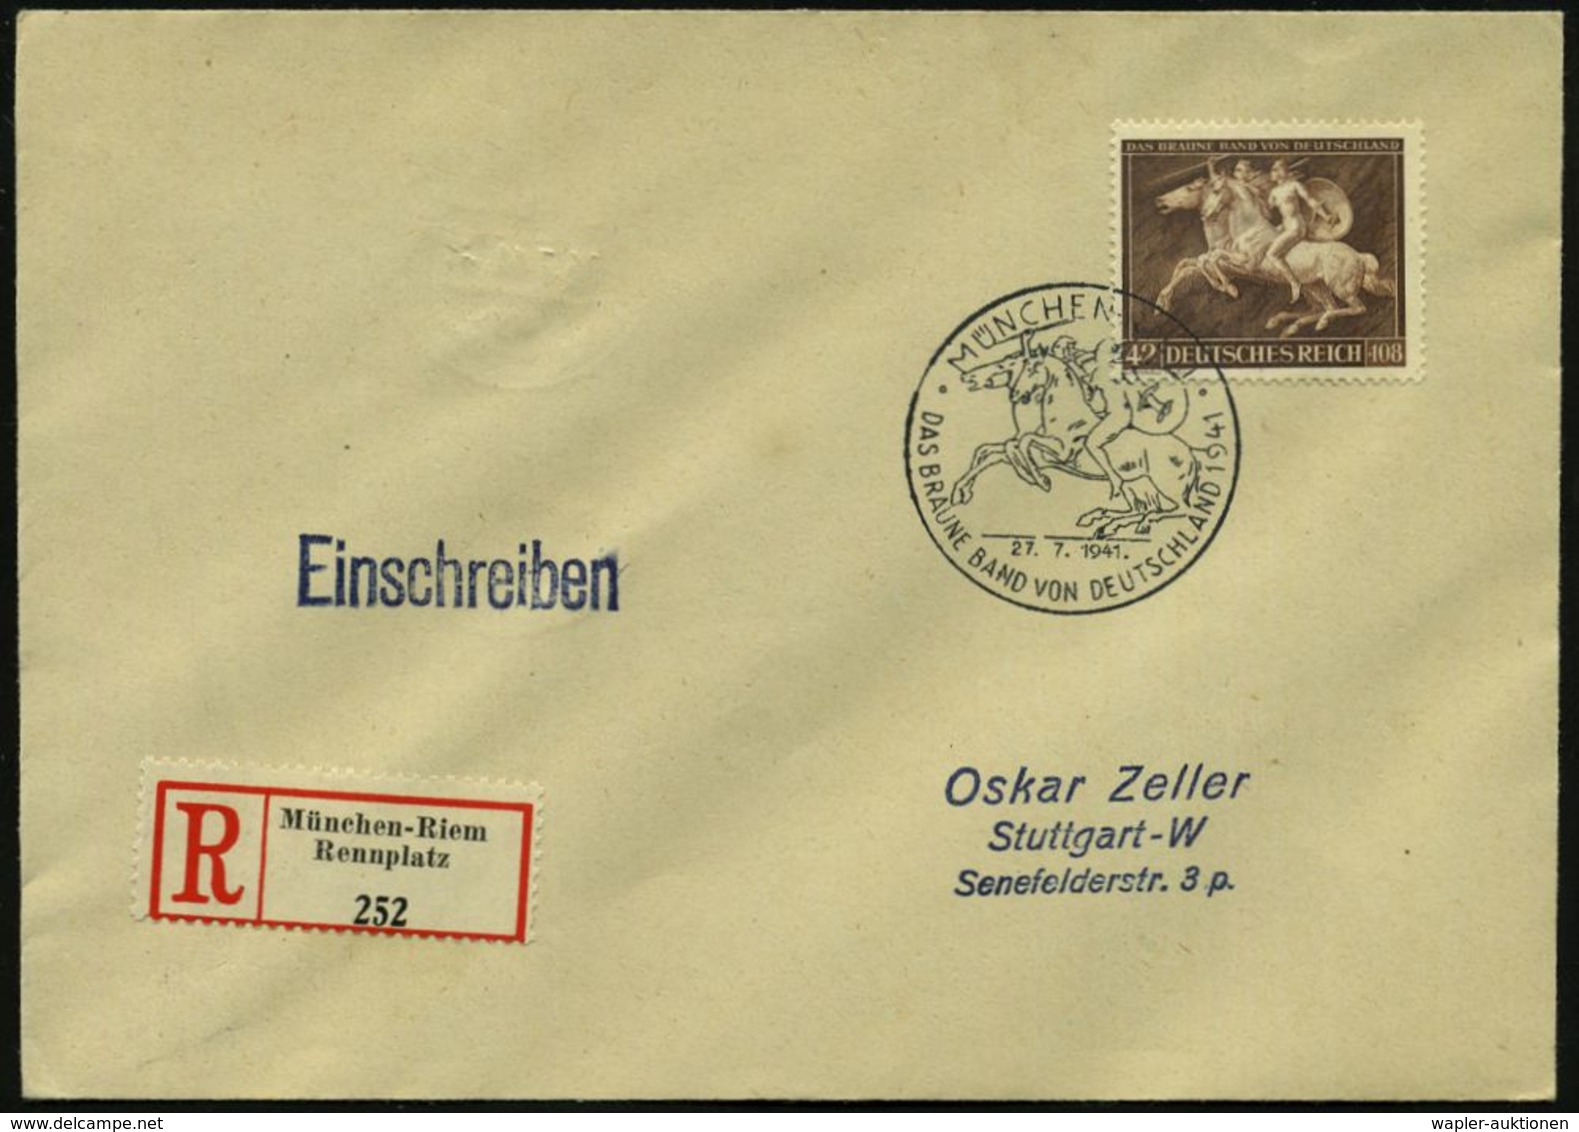 ANTIKES GRIECHENLAND : MÜNCHEN-RIEM/ DAS BRAUNE BAND VON DEUTSCHLAND 1941 (27.7.) SSt = 2 Amazonen Zu Pferd Auf Motivgl. - Archäologie